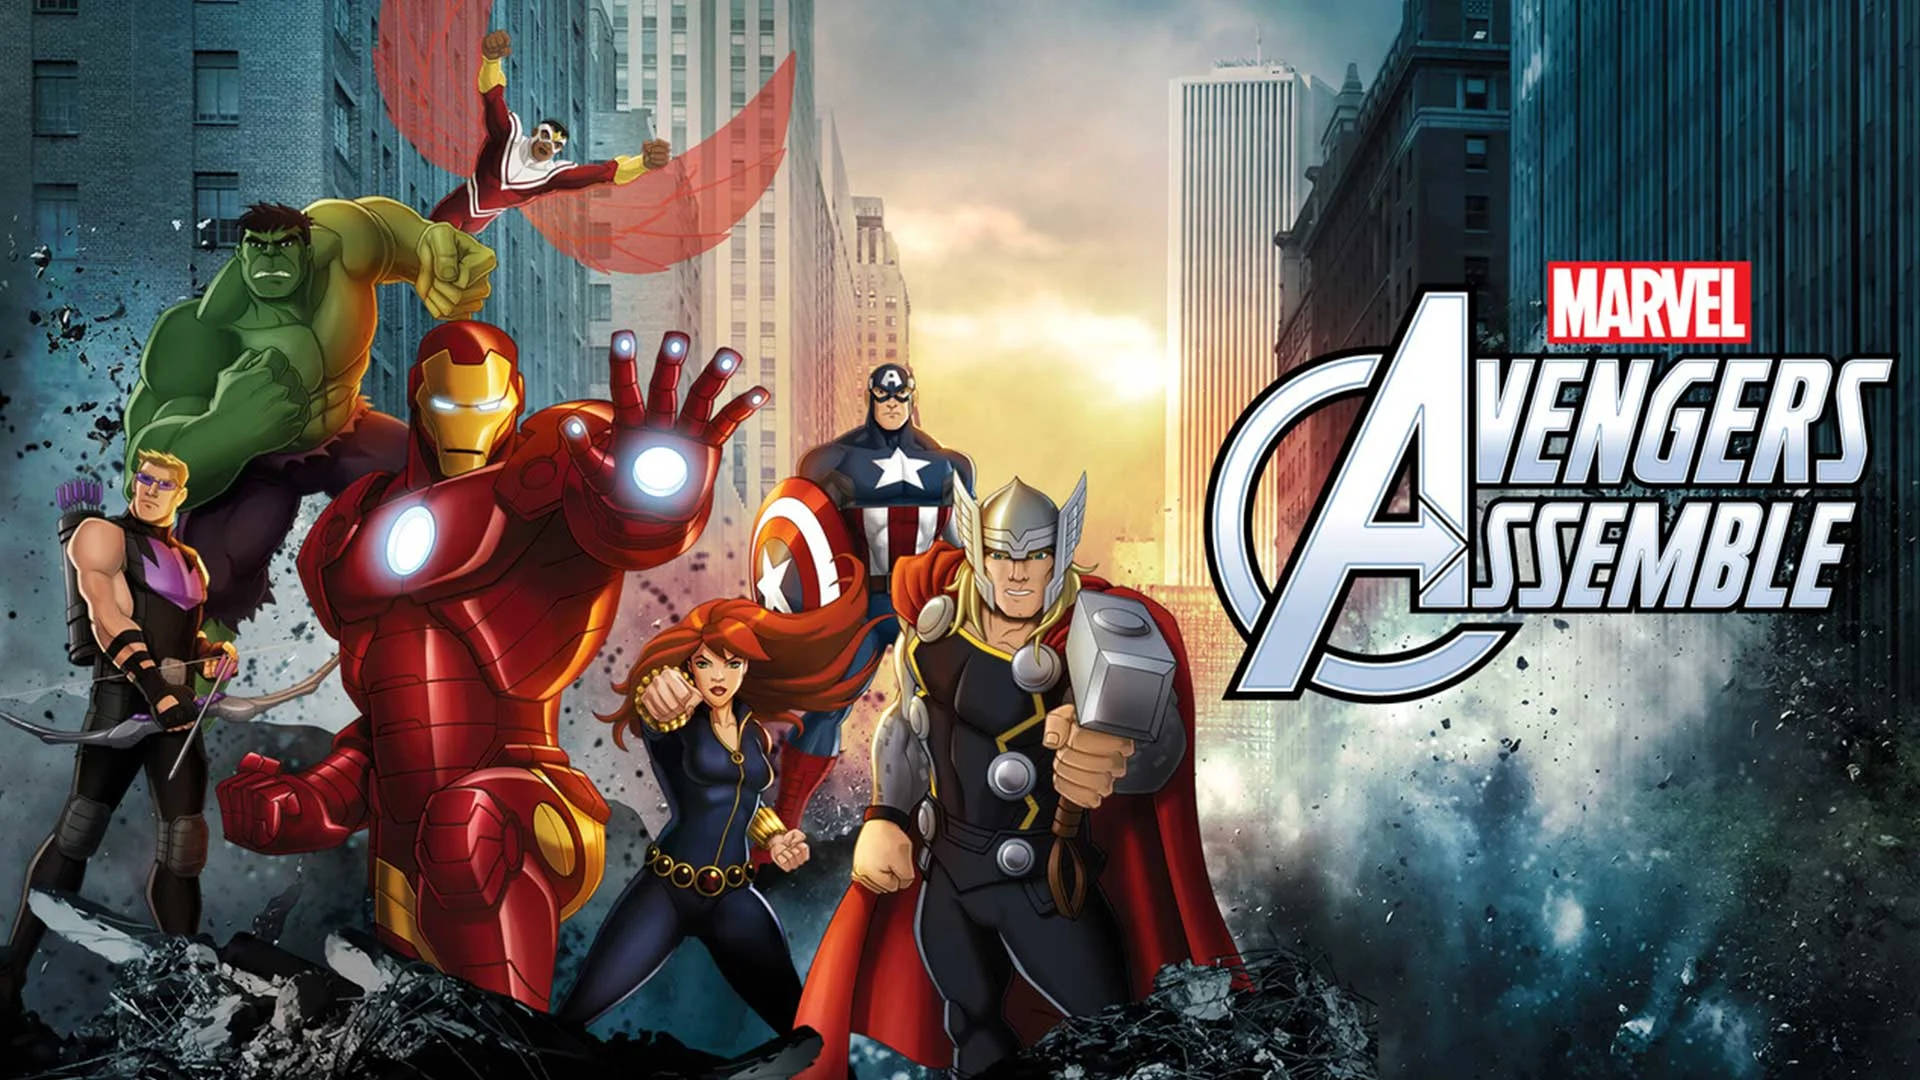 Avengersassemble Digital Illustration: Avenger Samlas Digital Illustration. Wallpaper